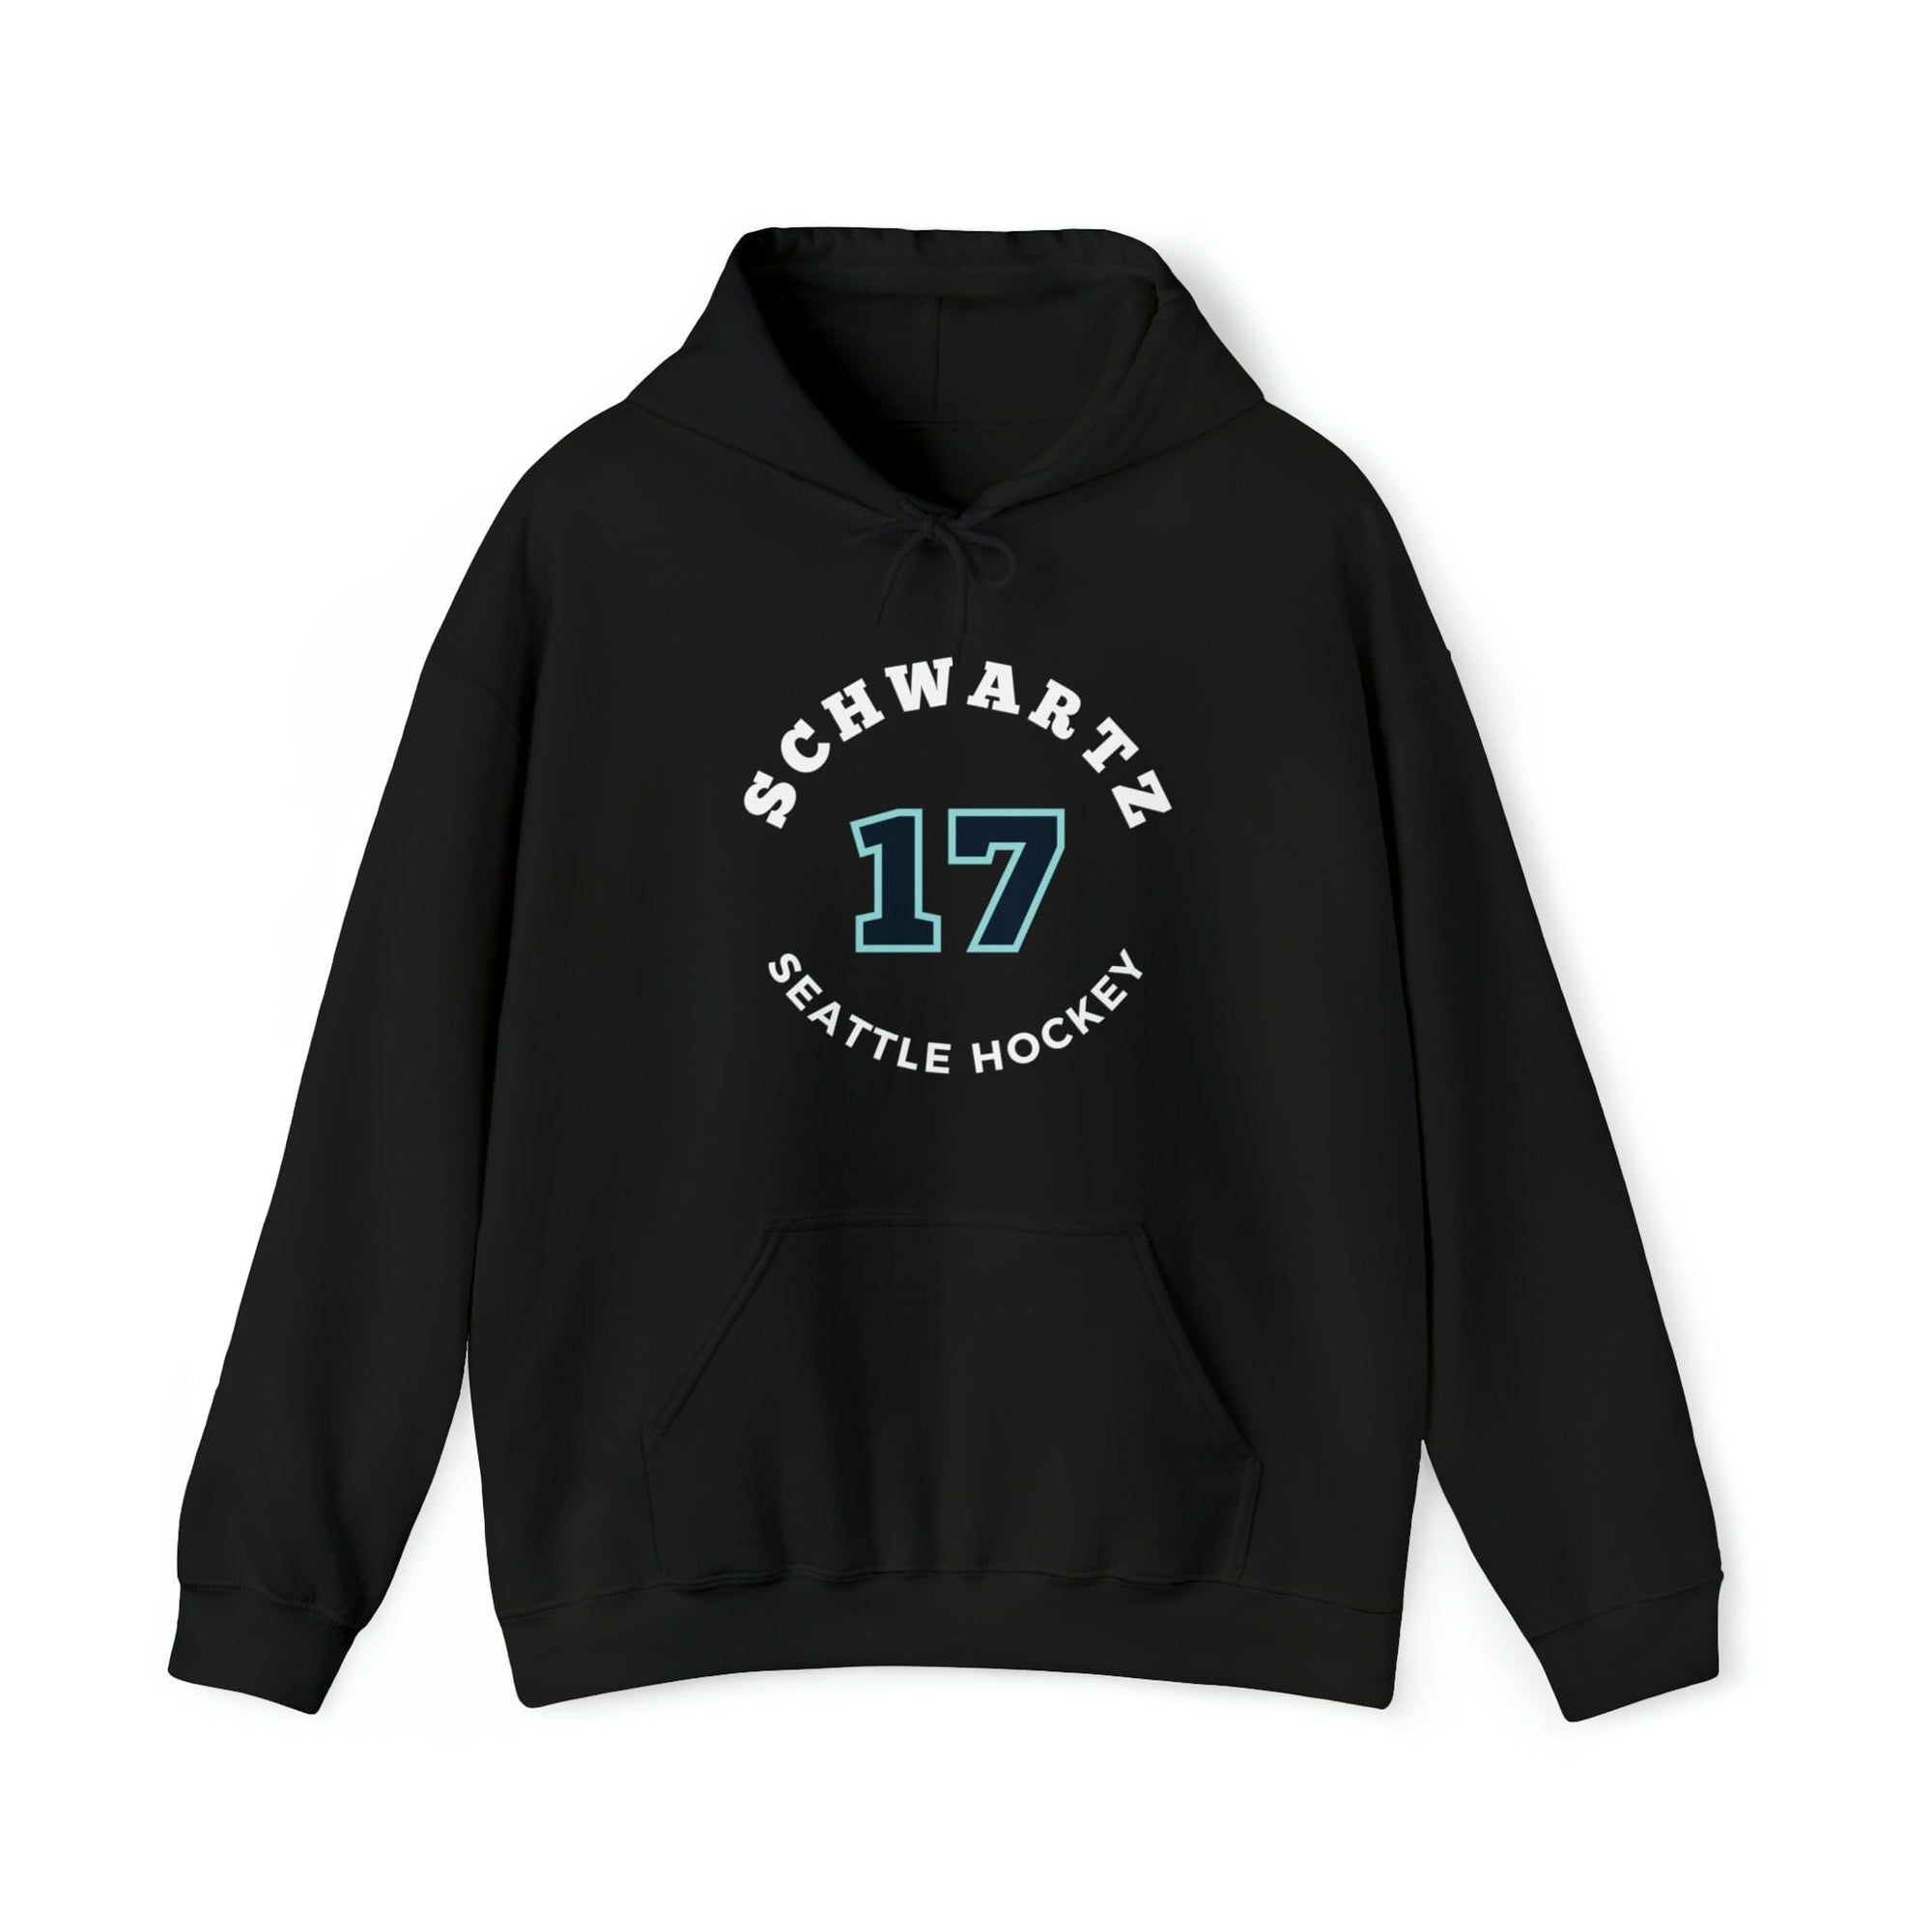 Hoodie Schwartz 17 Seattle Hockey Number Arch Design Unisex Hooded Sweatshirt